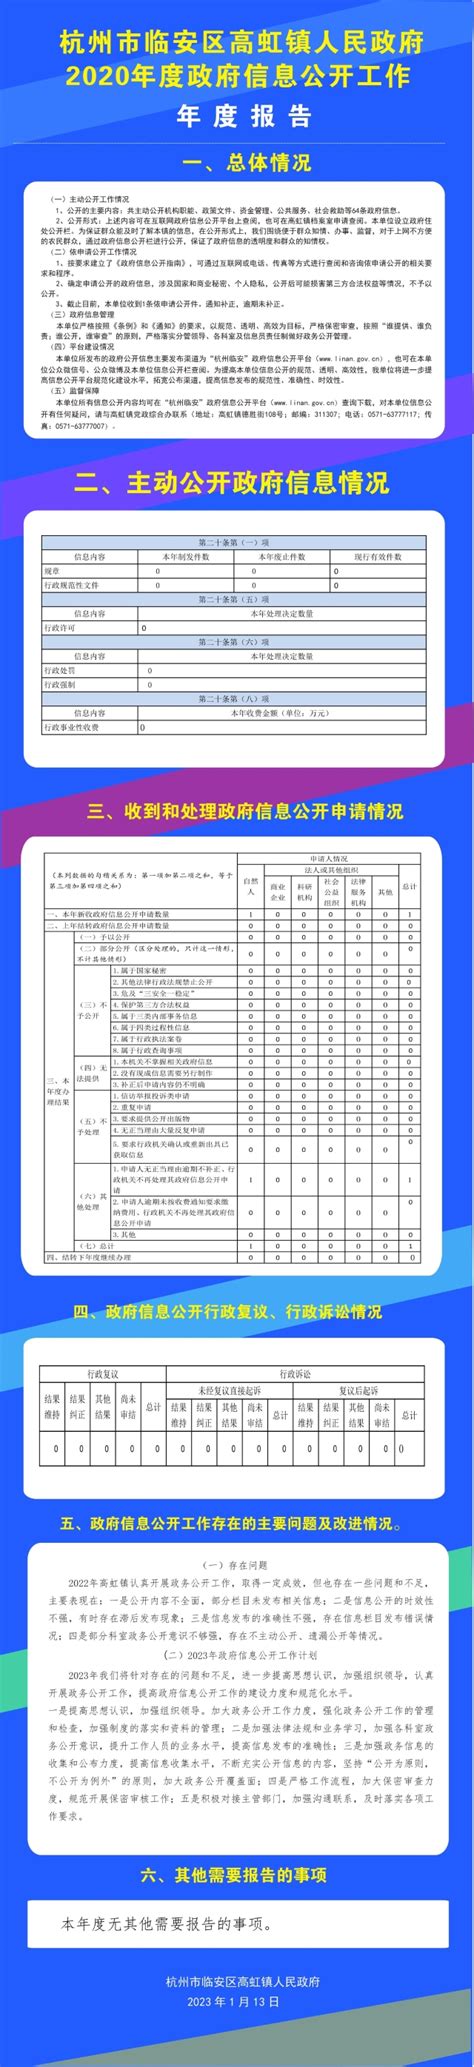 【图解】杭州市临安区高虹镇人民政府2022年政府信息公开工作年度报告